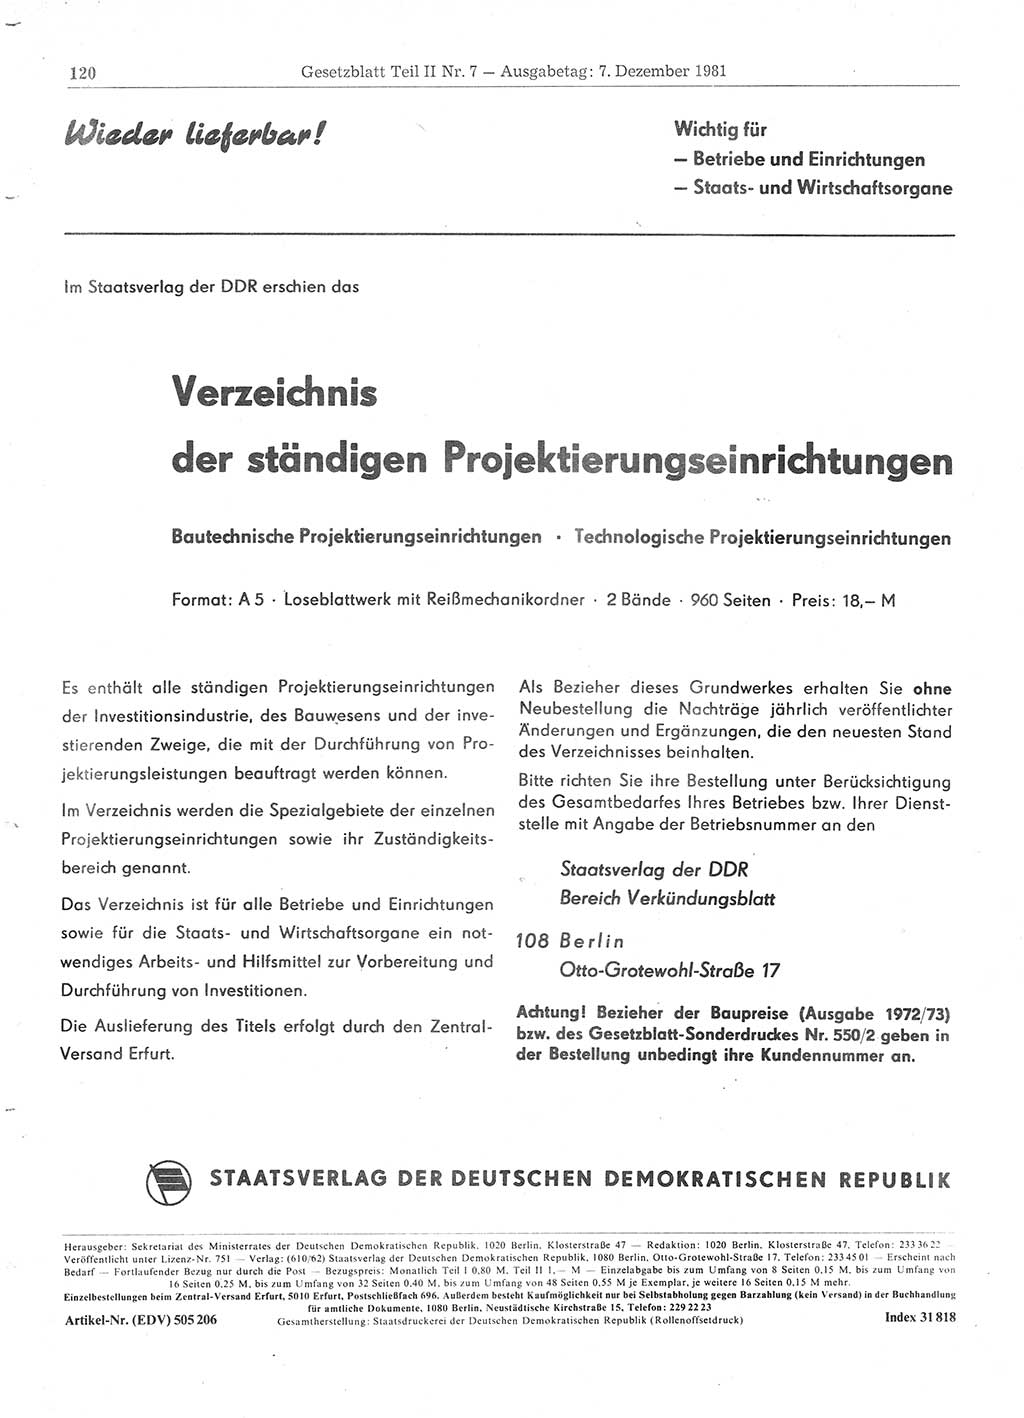 Gesetzblatt (GBl.) der Deutschen Demokratischen Republik (DDR) Teil ⅠⅠ 1981, Seite 120 (GBl. DDR ⅠⅠ 1981, S. 120)